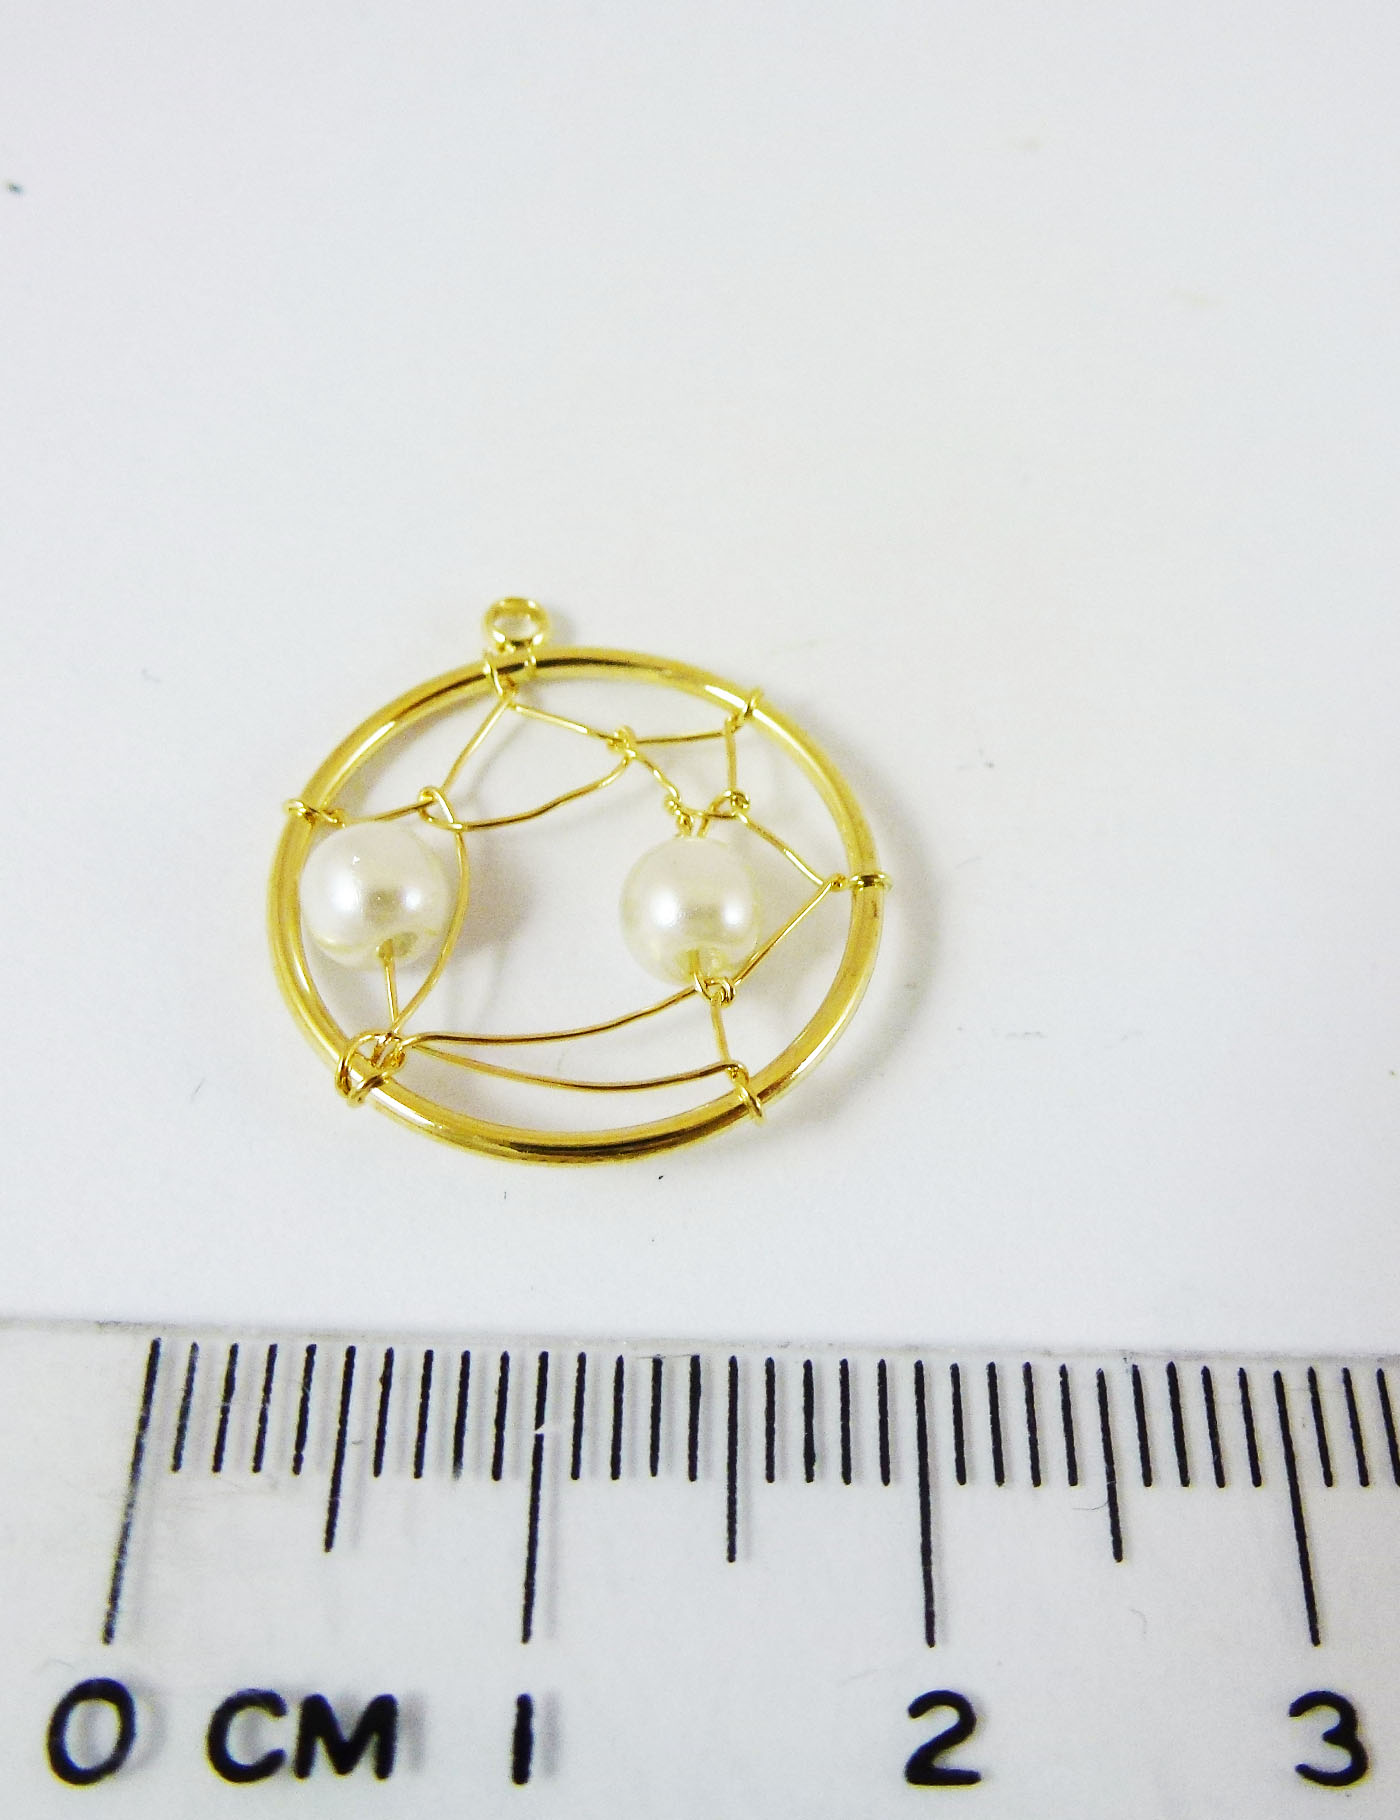 銅鍍金色單孔圓形補夢網-白珍珠